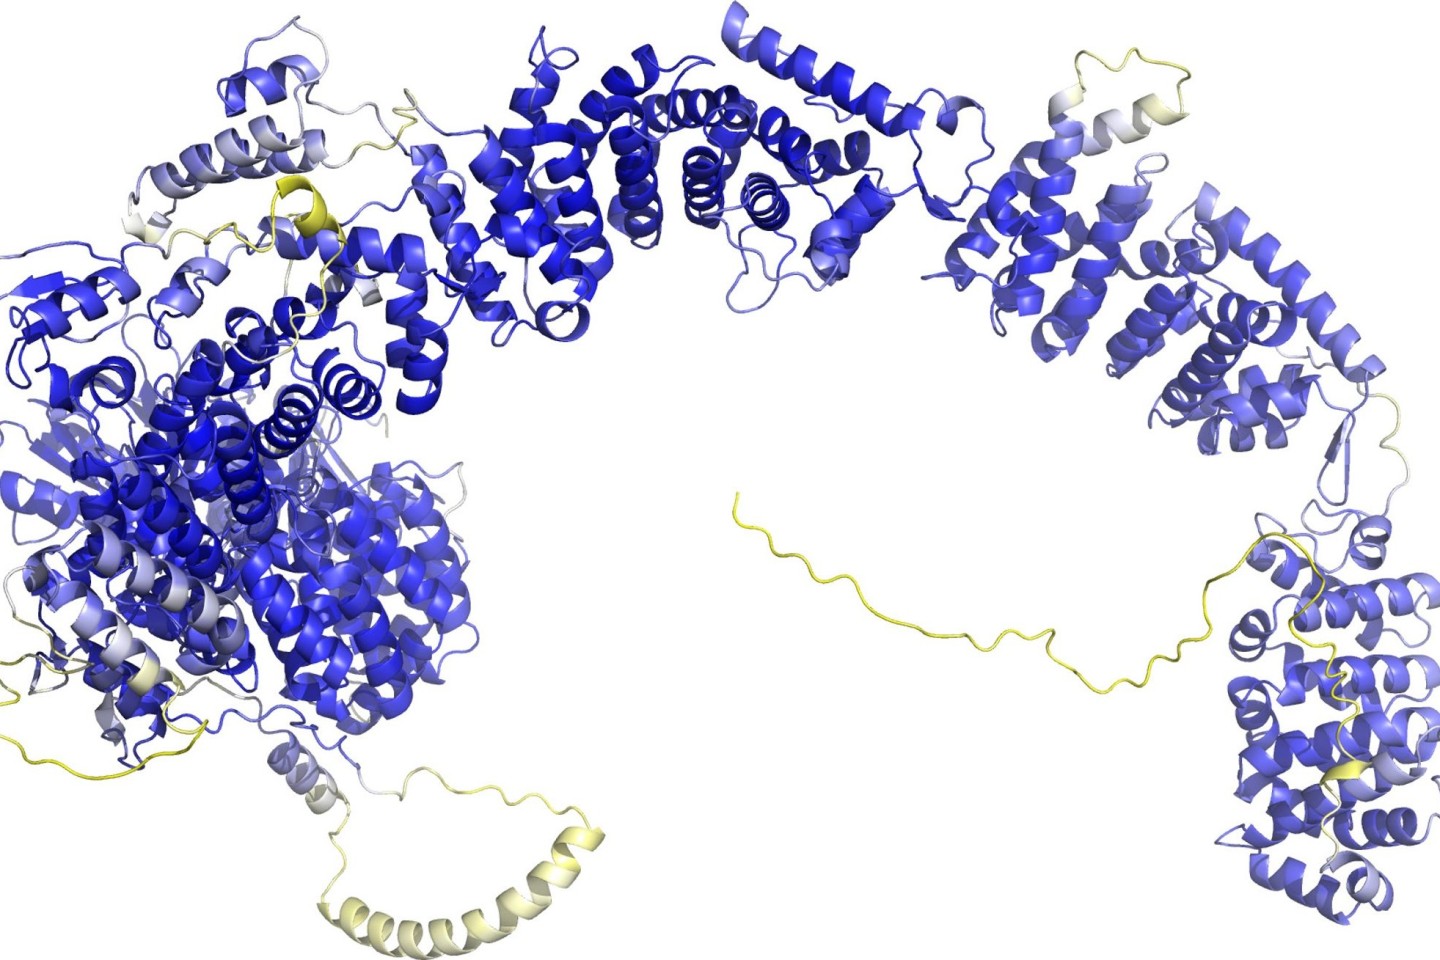 Das Modell der AlphaFold Protein Structure Database stellt das Rückgrat der Proteinstruktur dar. Sogenannte Sekundärstrukturelemente sind als Bänder wiedergegeben. In den blauen Bereichen...